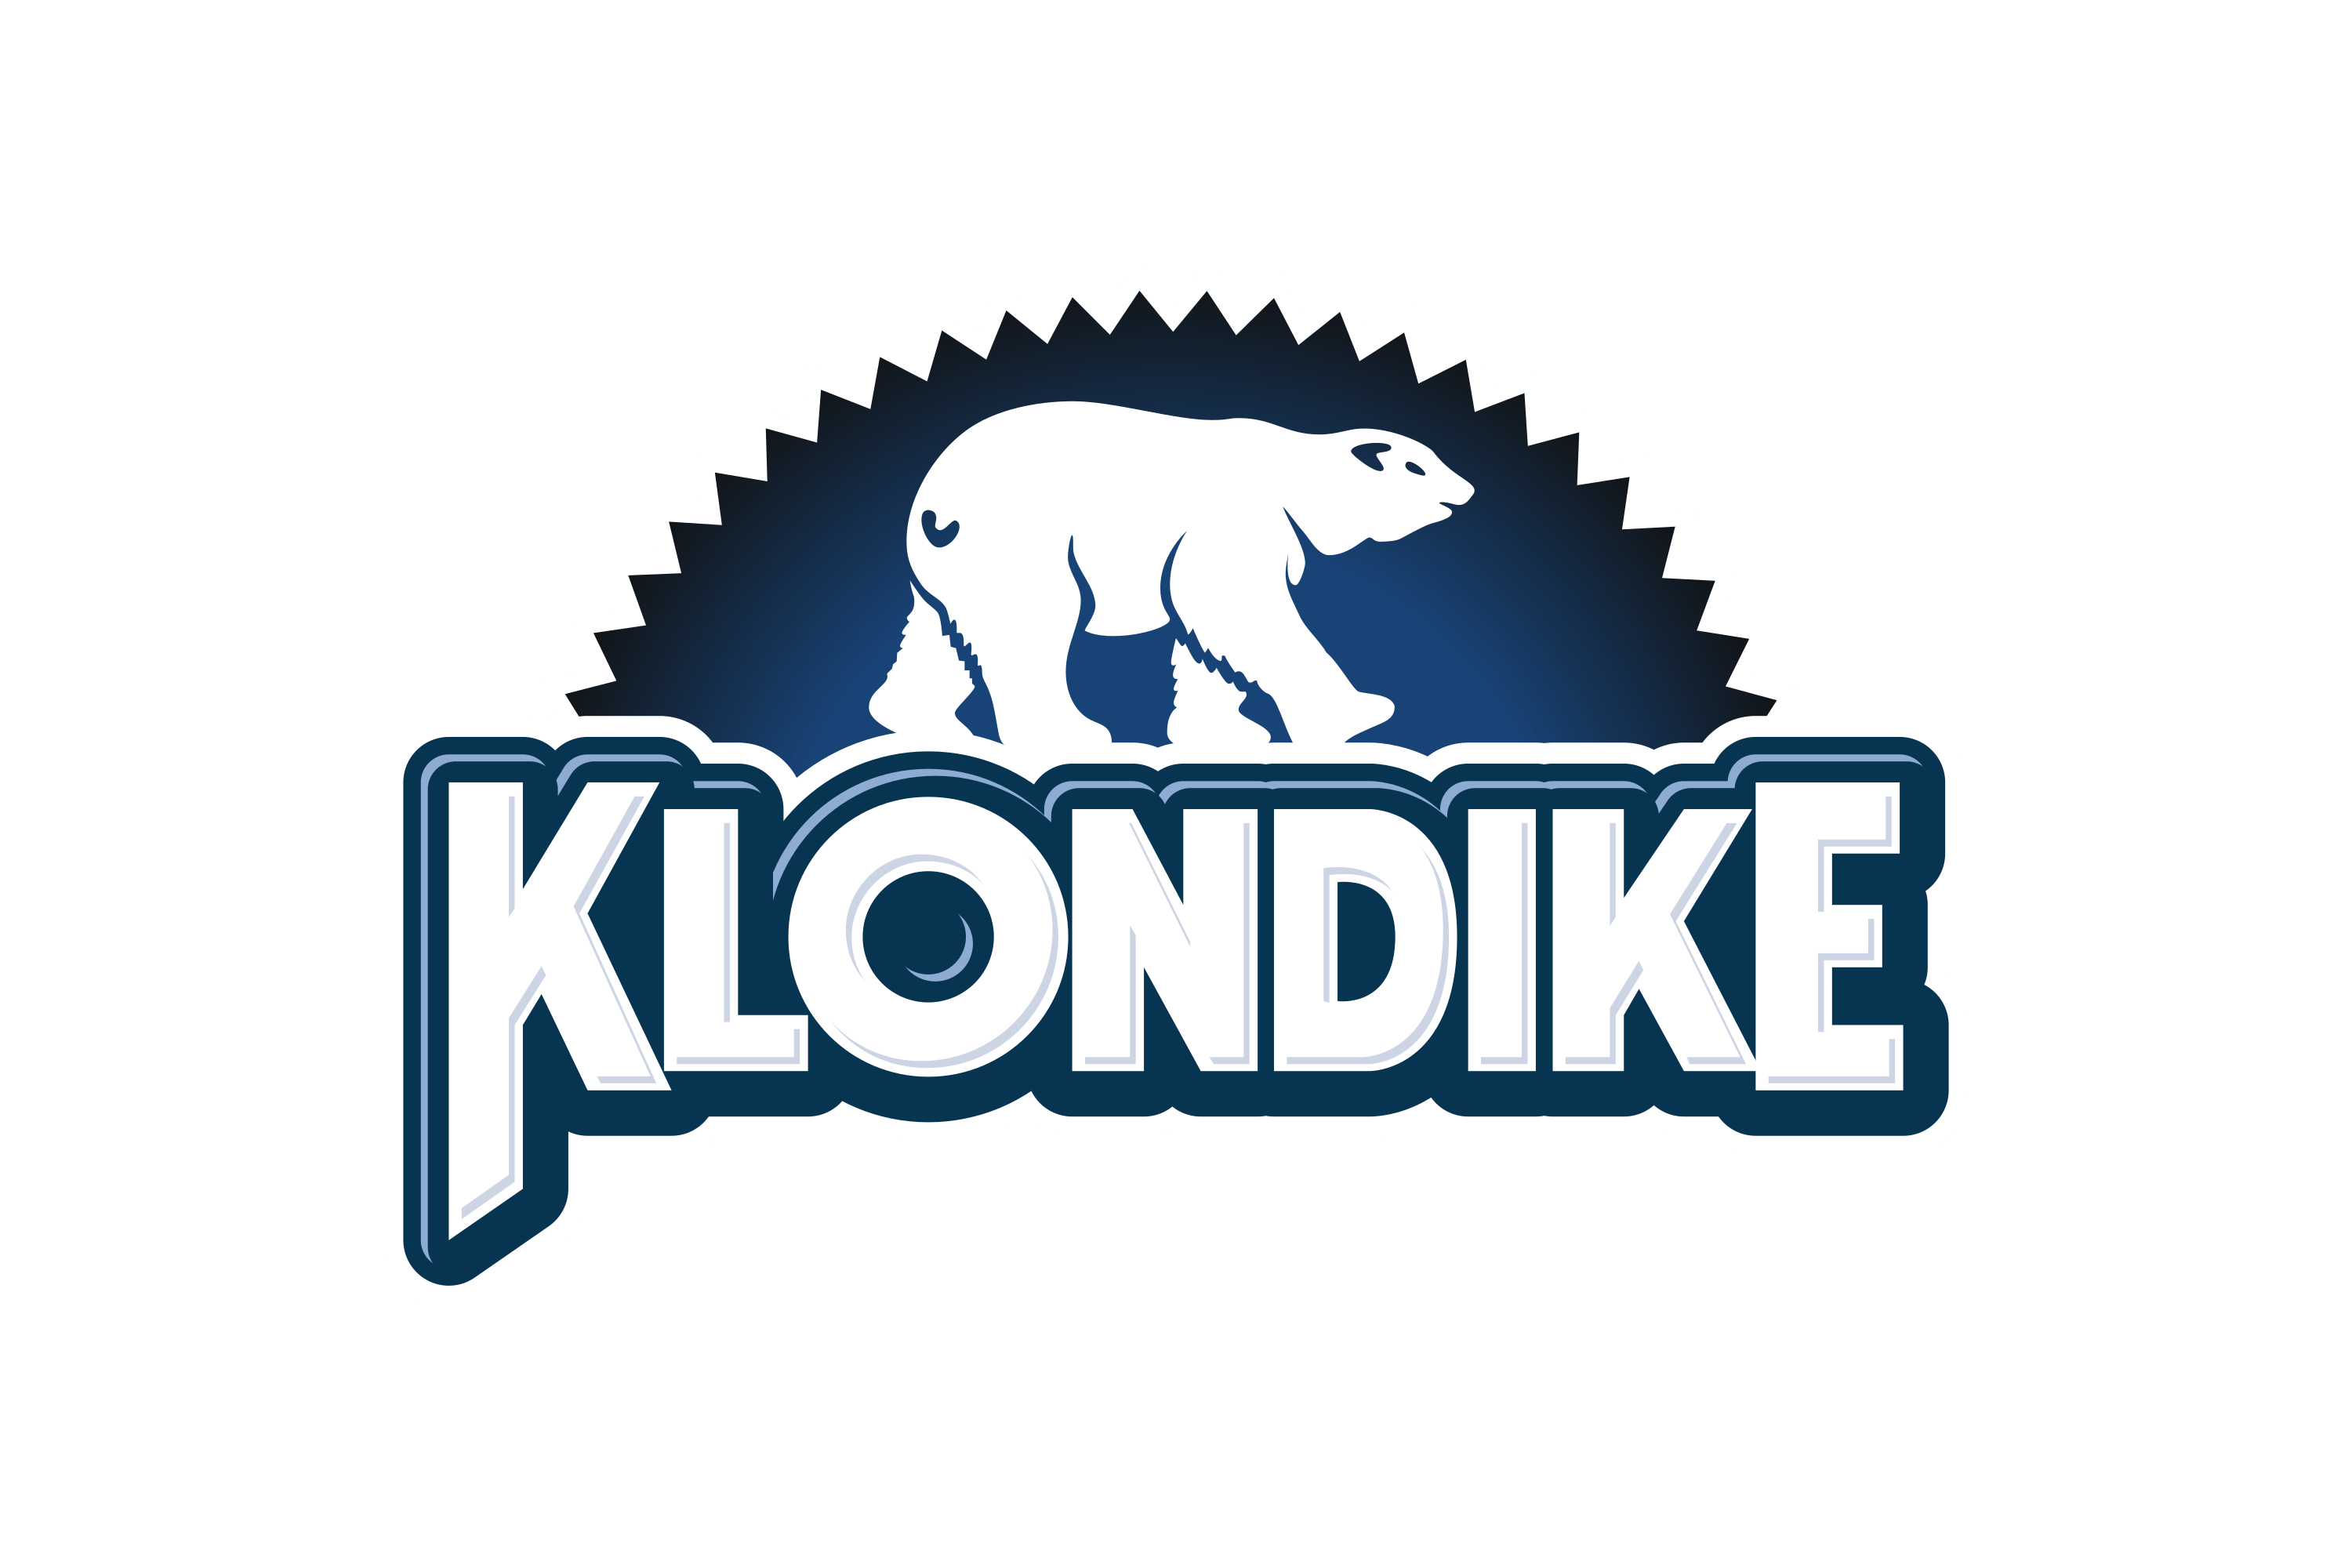 Klondike bar Logo